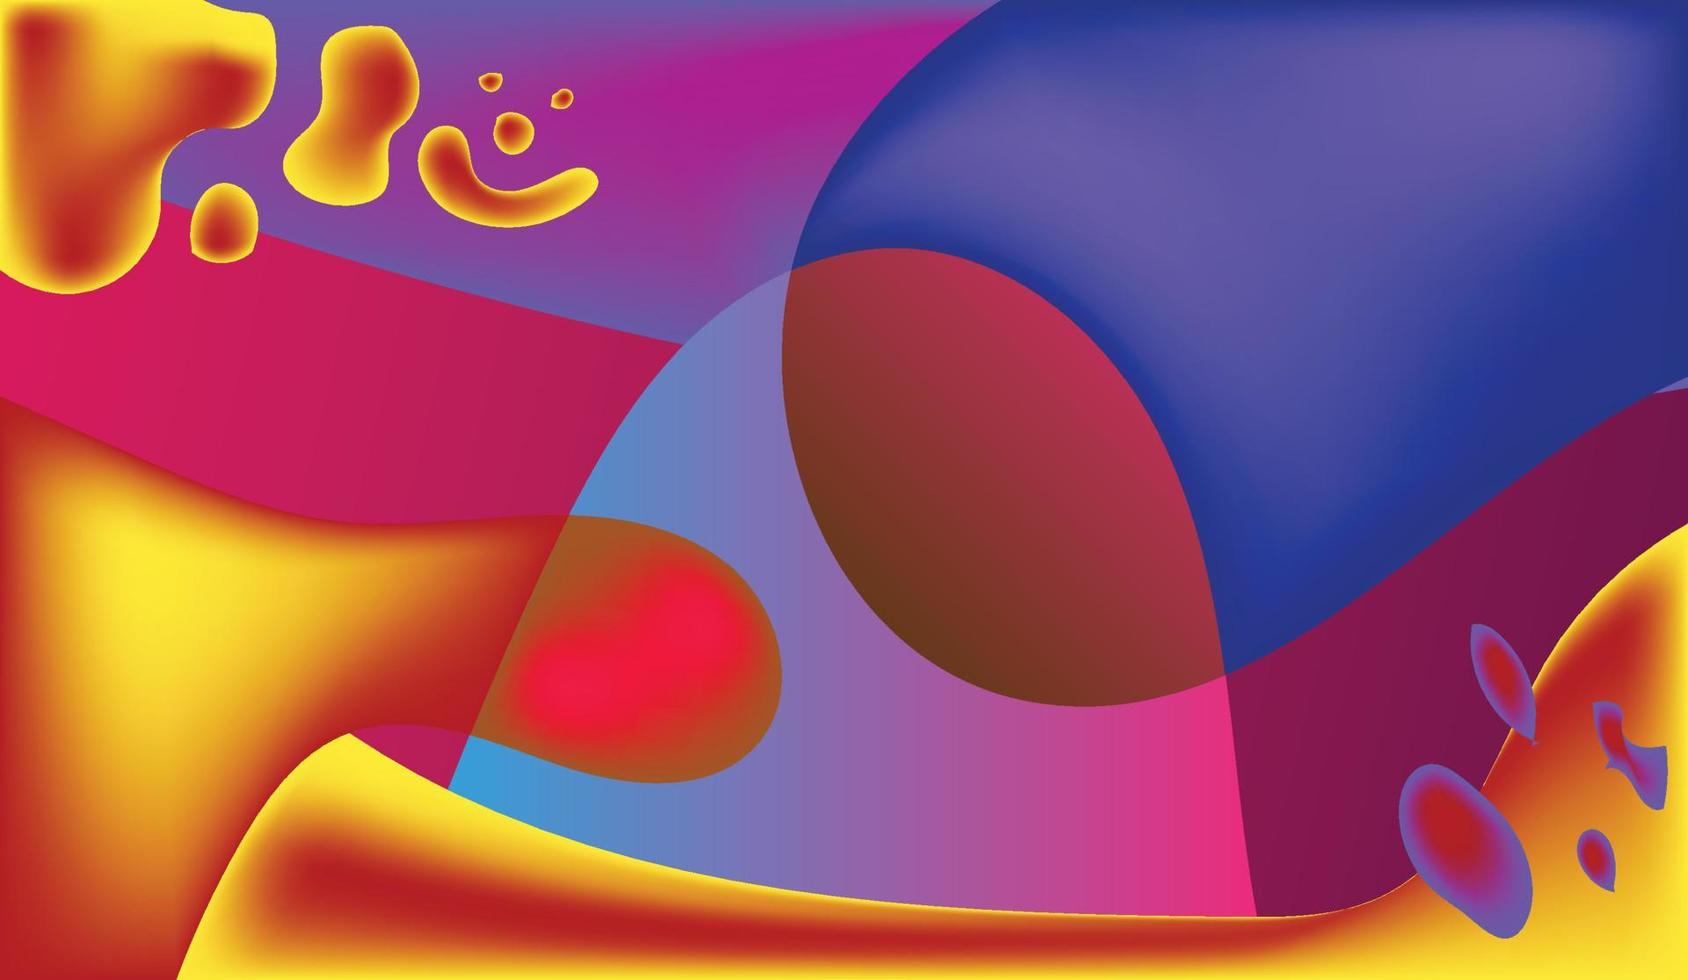 diseño de fondo degradado de color. fondo geométrico abstracto con formas líquidas. diseño de fondo fresco para carteles. ilustración vectorial eps10. vector